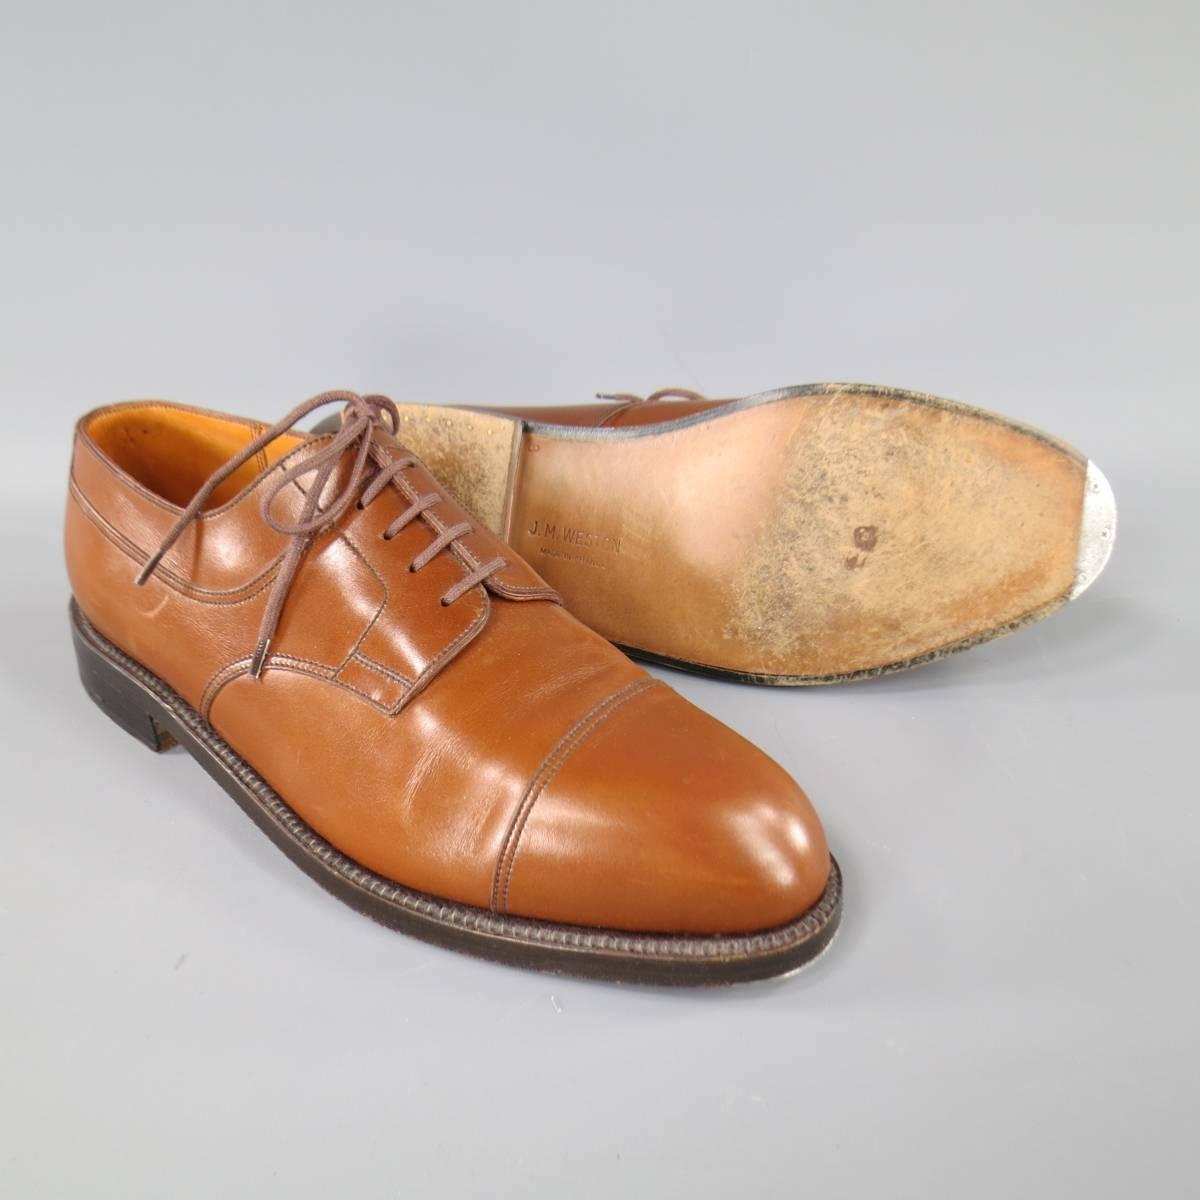 Men's Vintage J.M. WESTON Size 9 Tan Leather Cap Toe Lace Up Dress Shoes